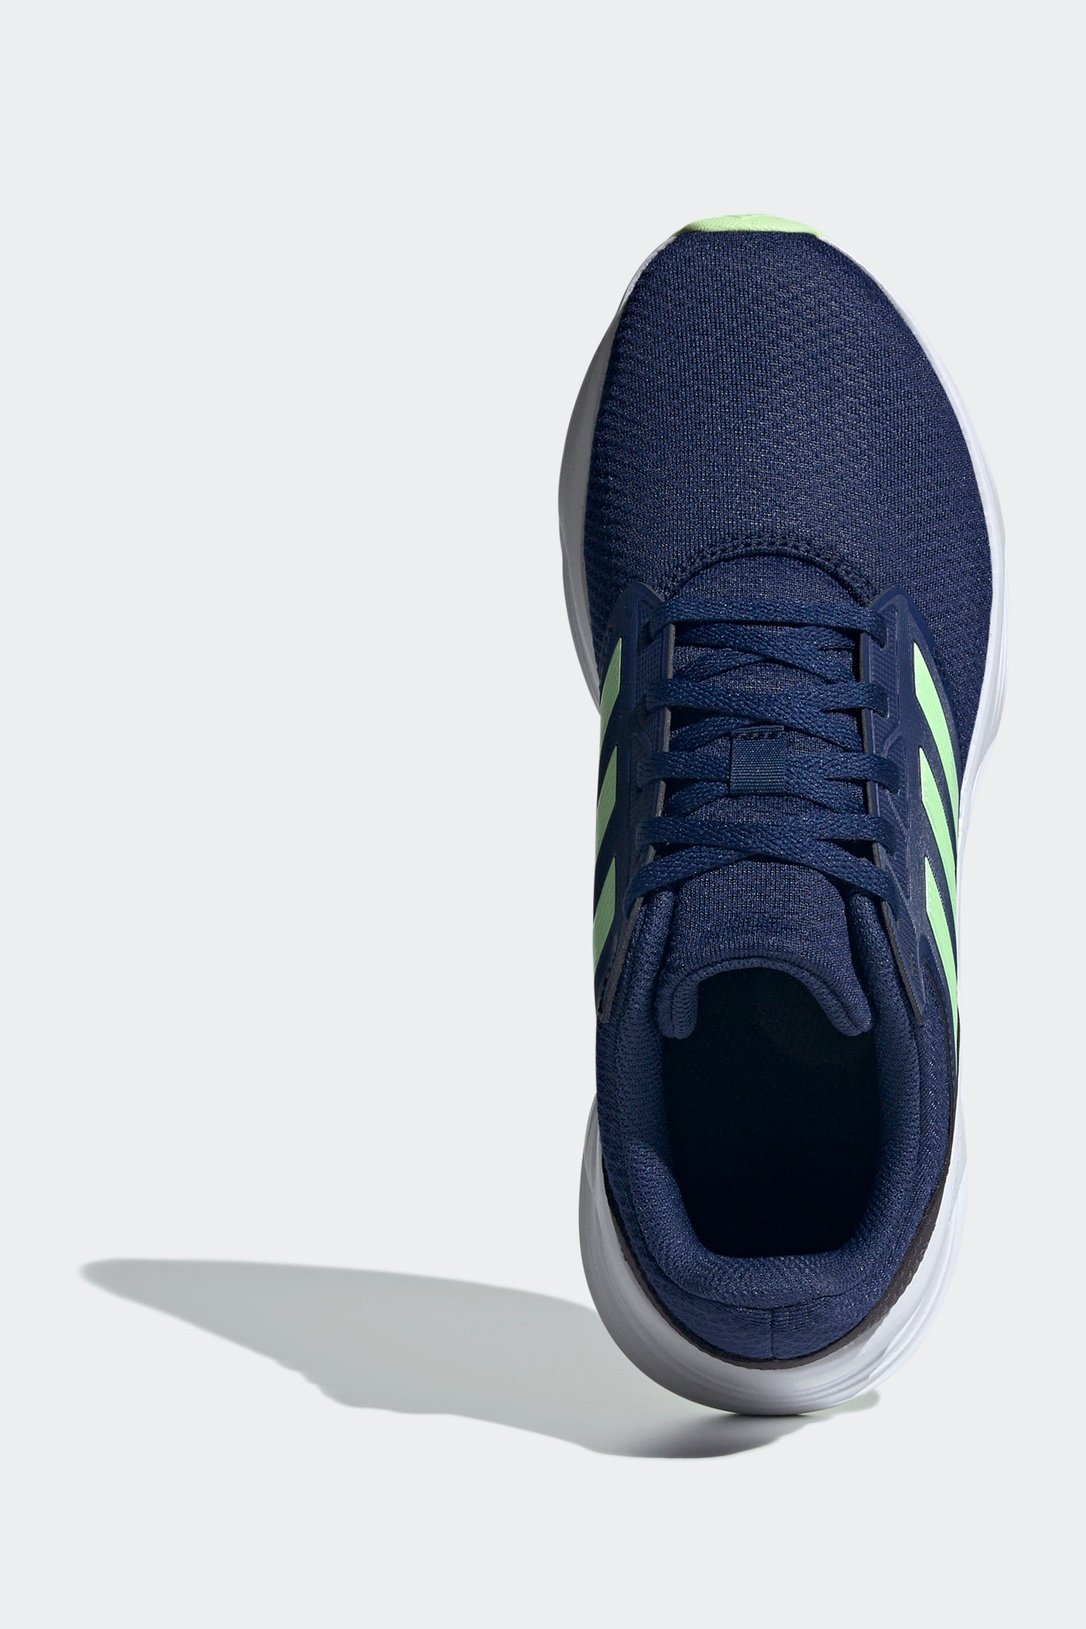 נעלי ספורט לגברים GALAXY 6 בצבע נייבי וירוק